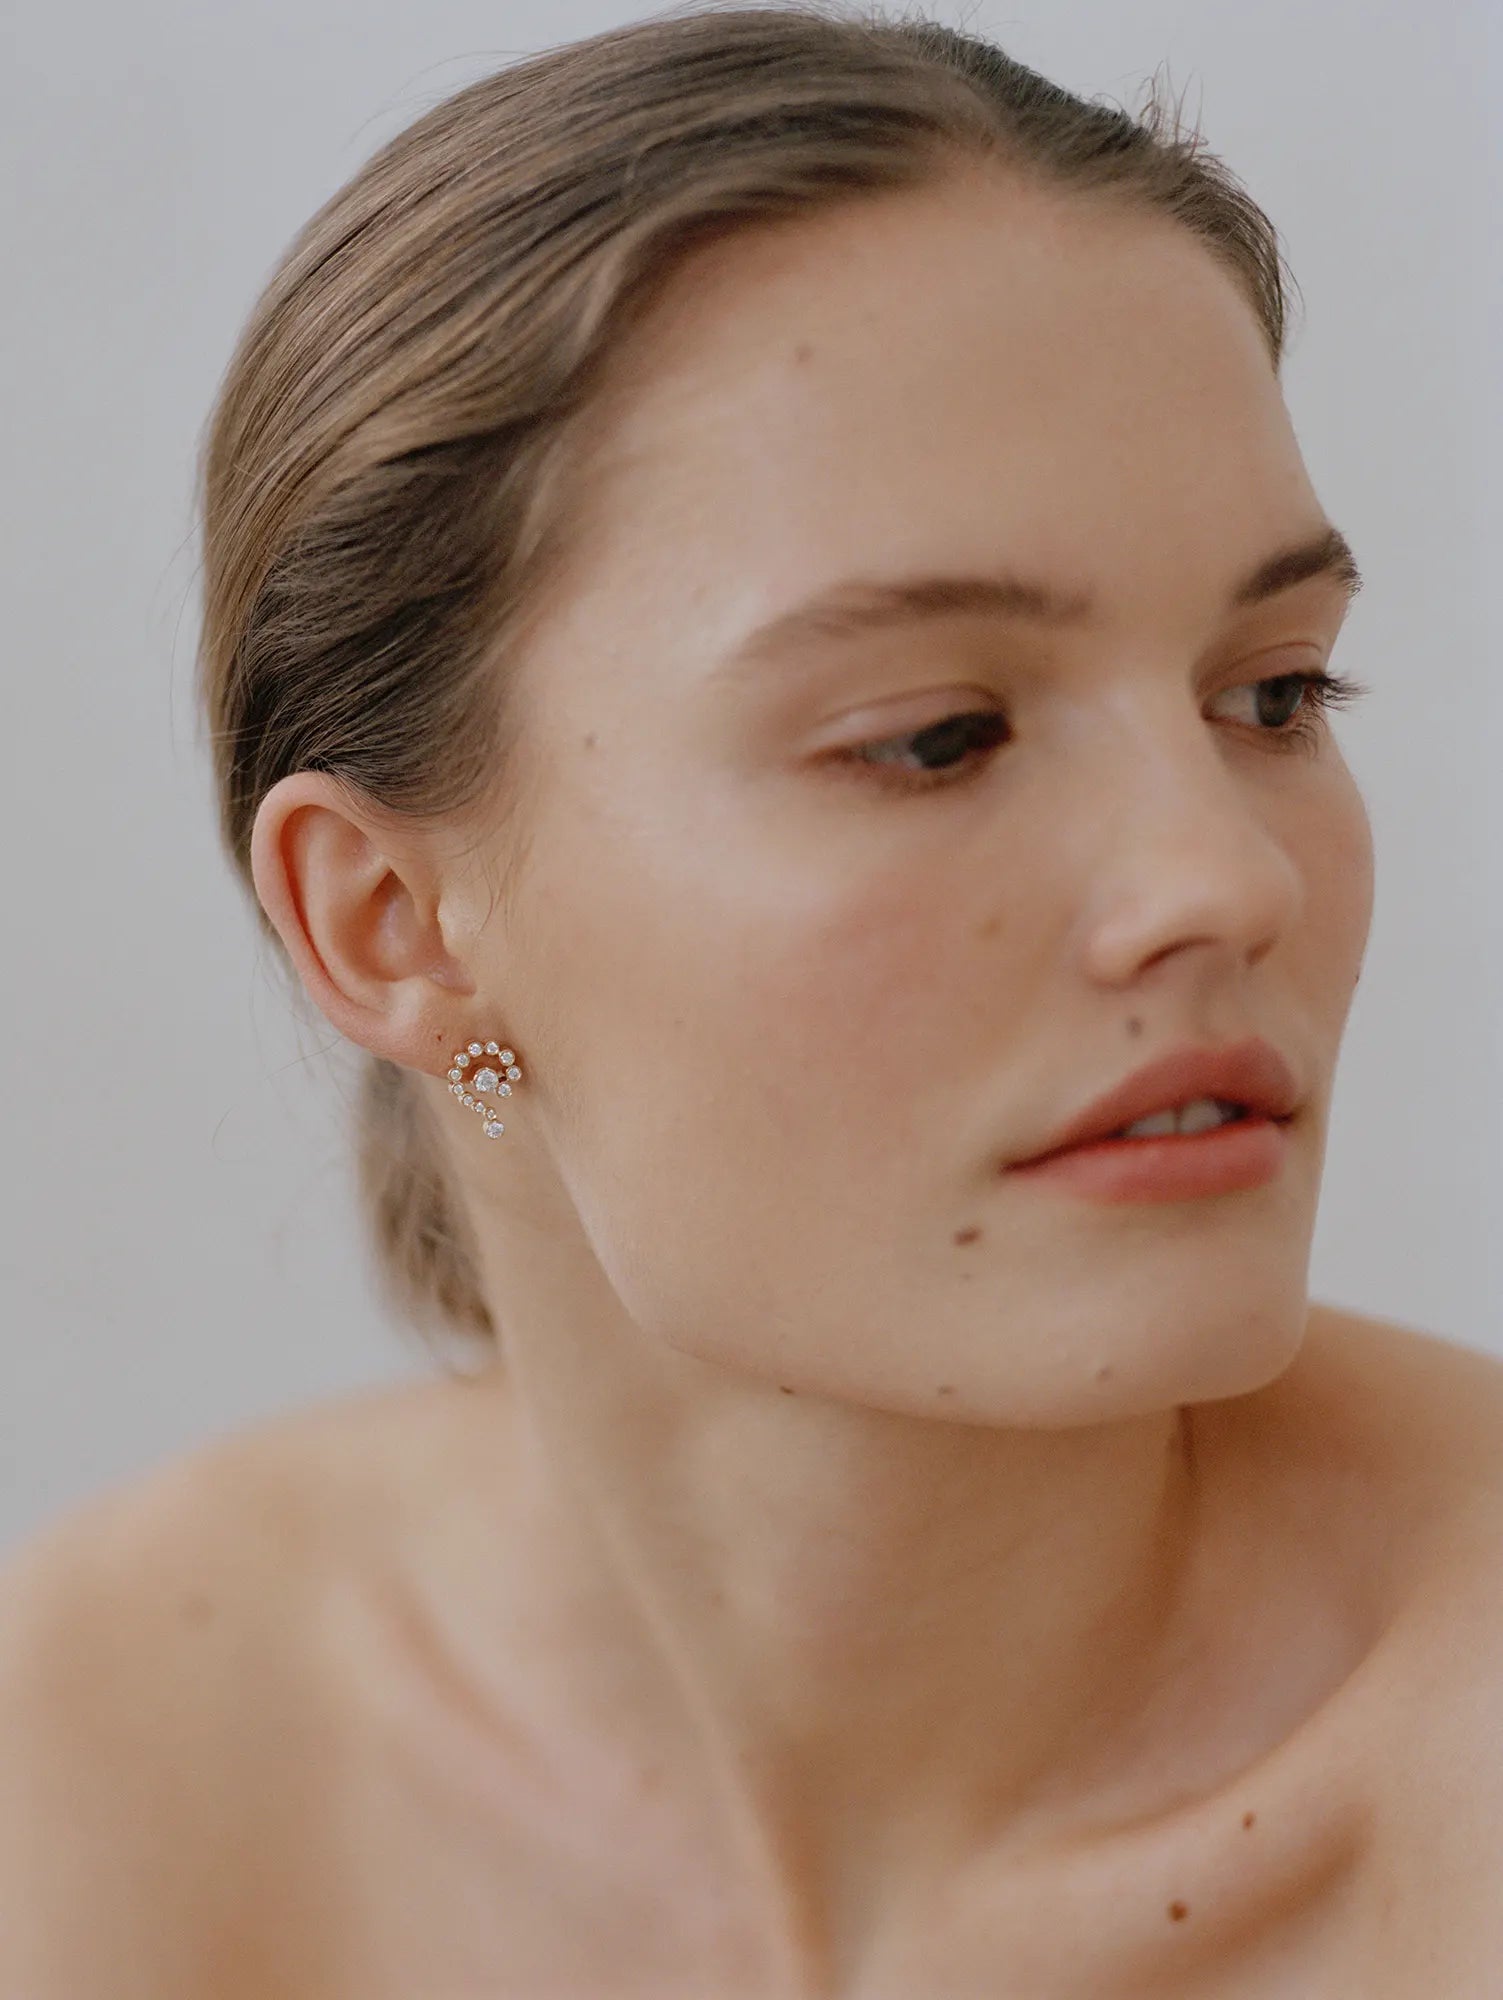 Model wearing Petite Escargot earring